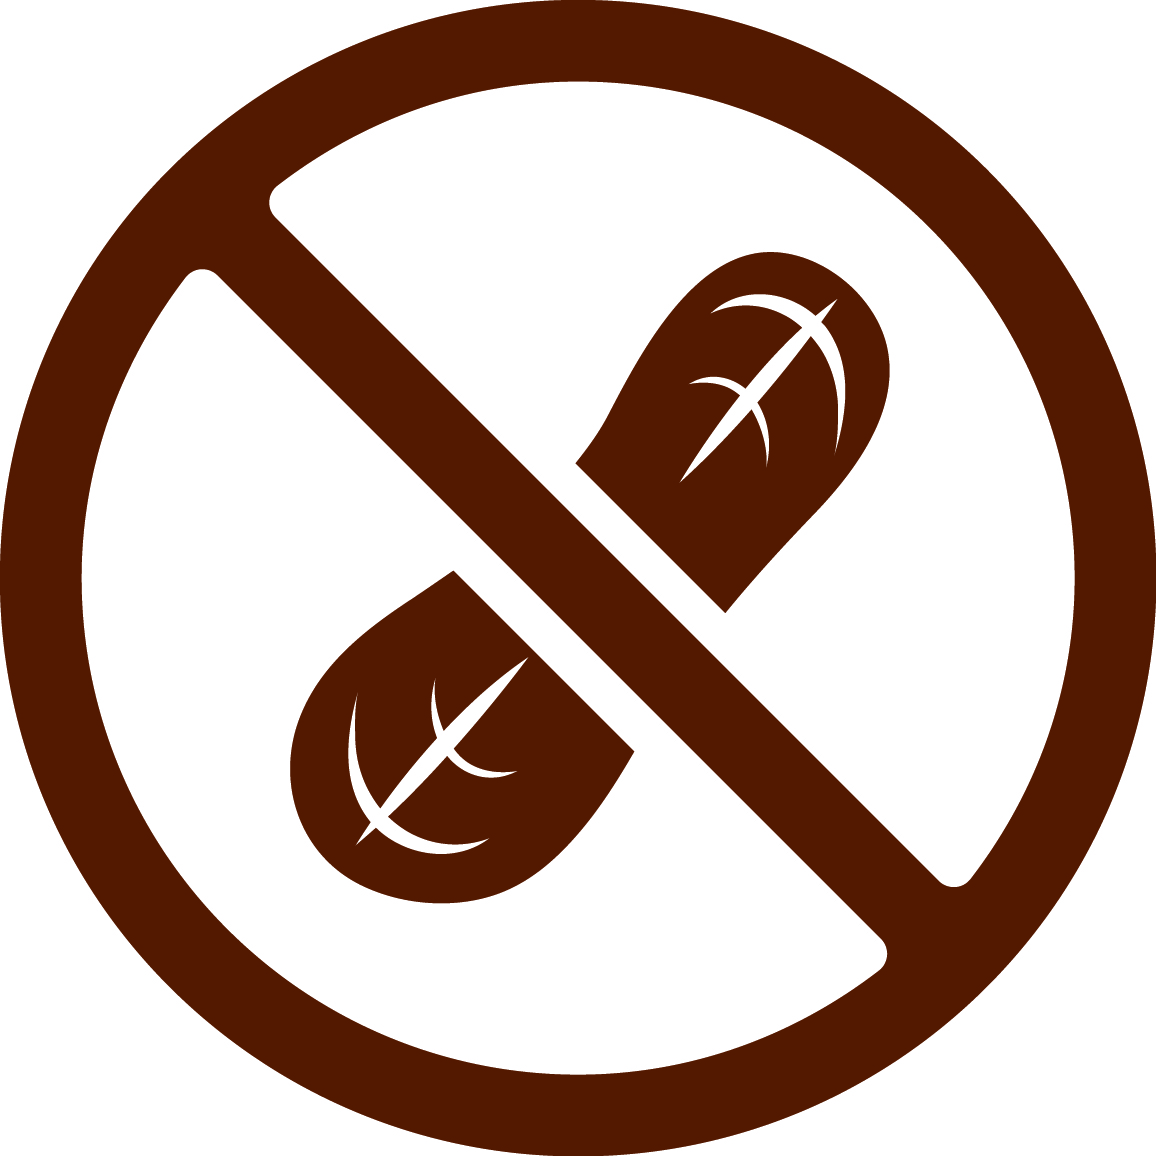 Nut-Free icon image